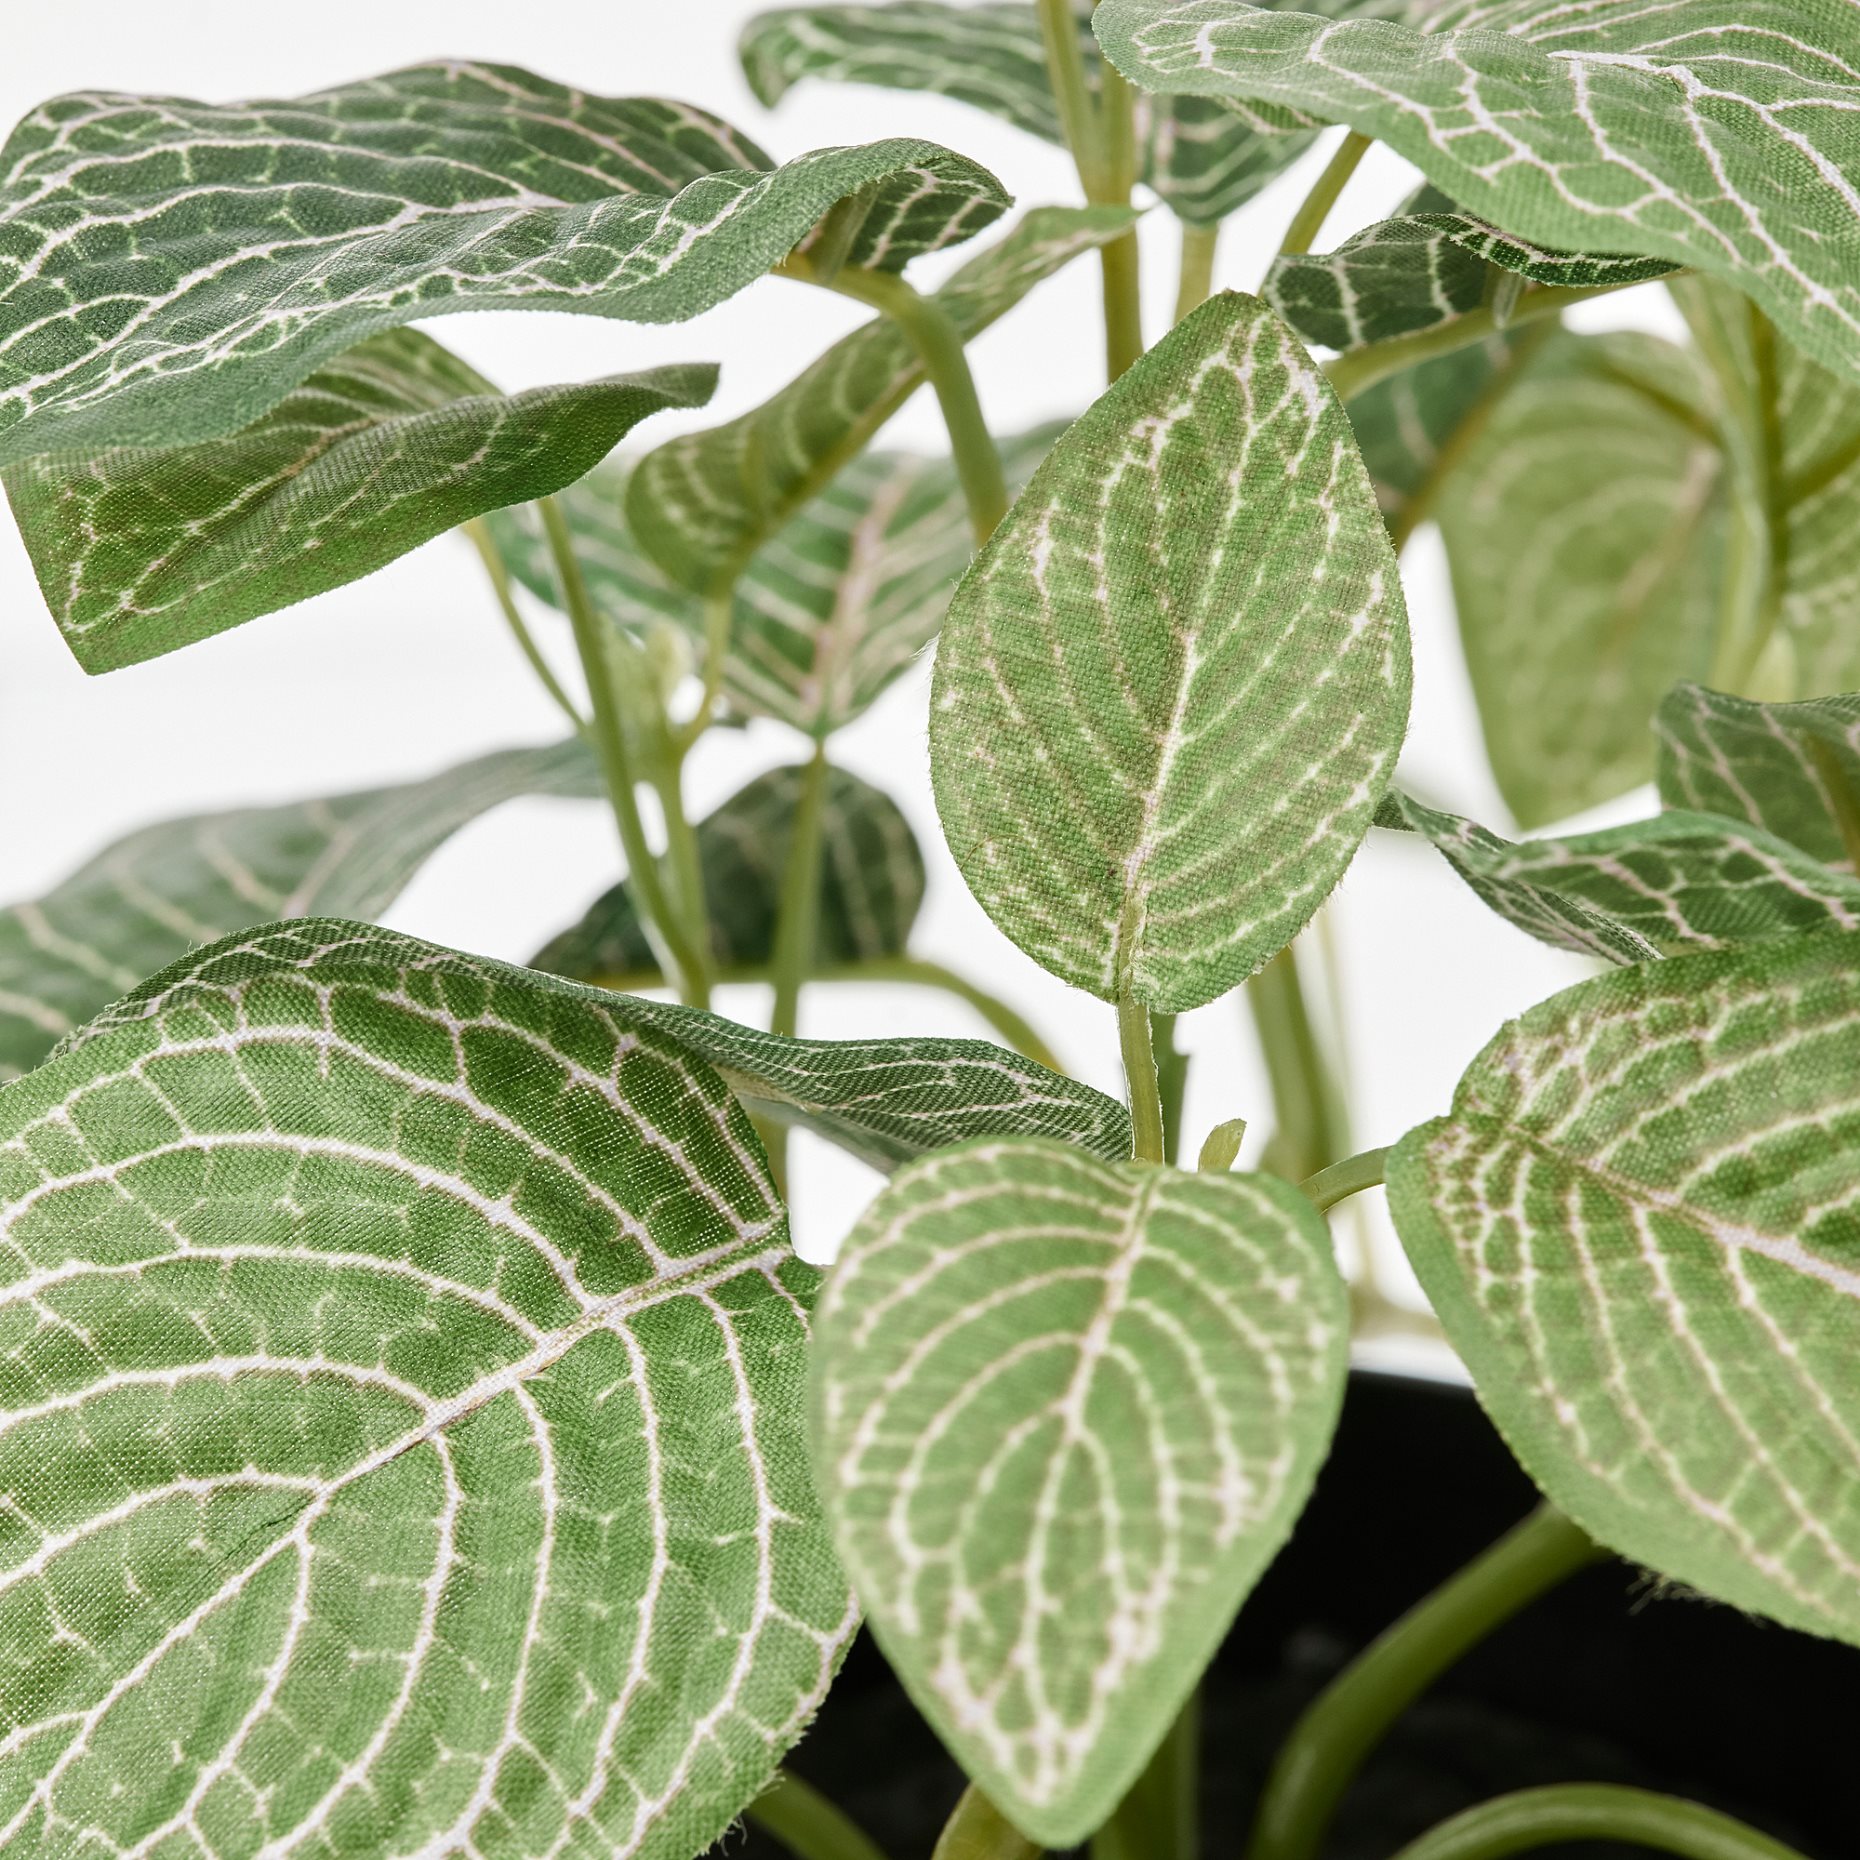 FEJKA, τεχνητό φυτό σε γλάστρα/εσωτερικού/εξωτερικού χώρου Φιτόνια/κρεμαστό, 9 cm, 505.356.17